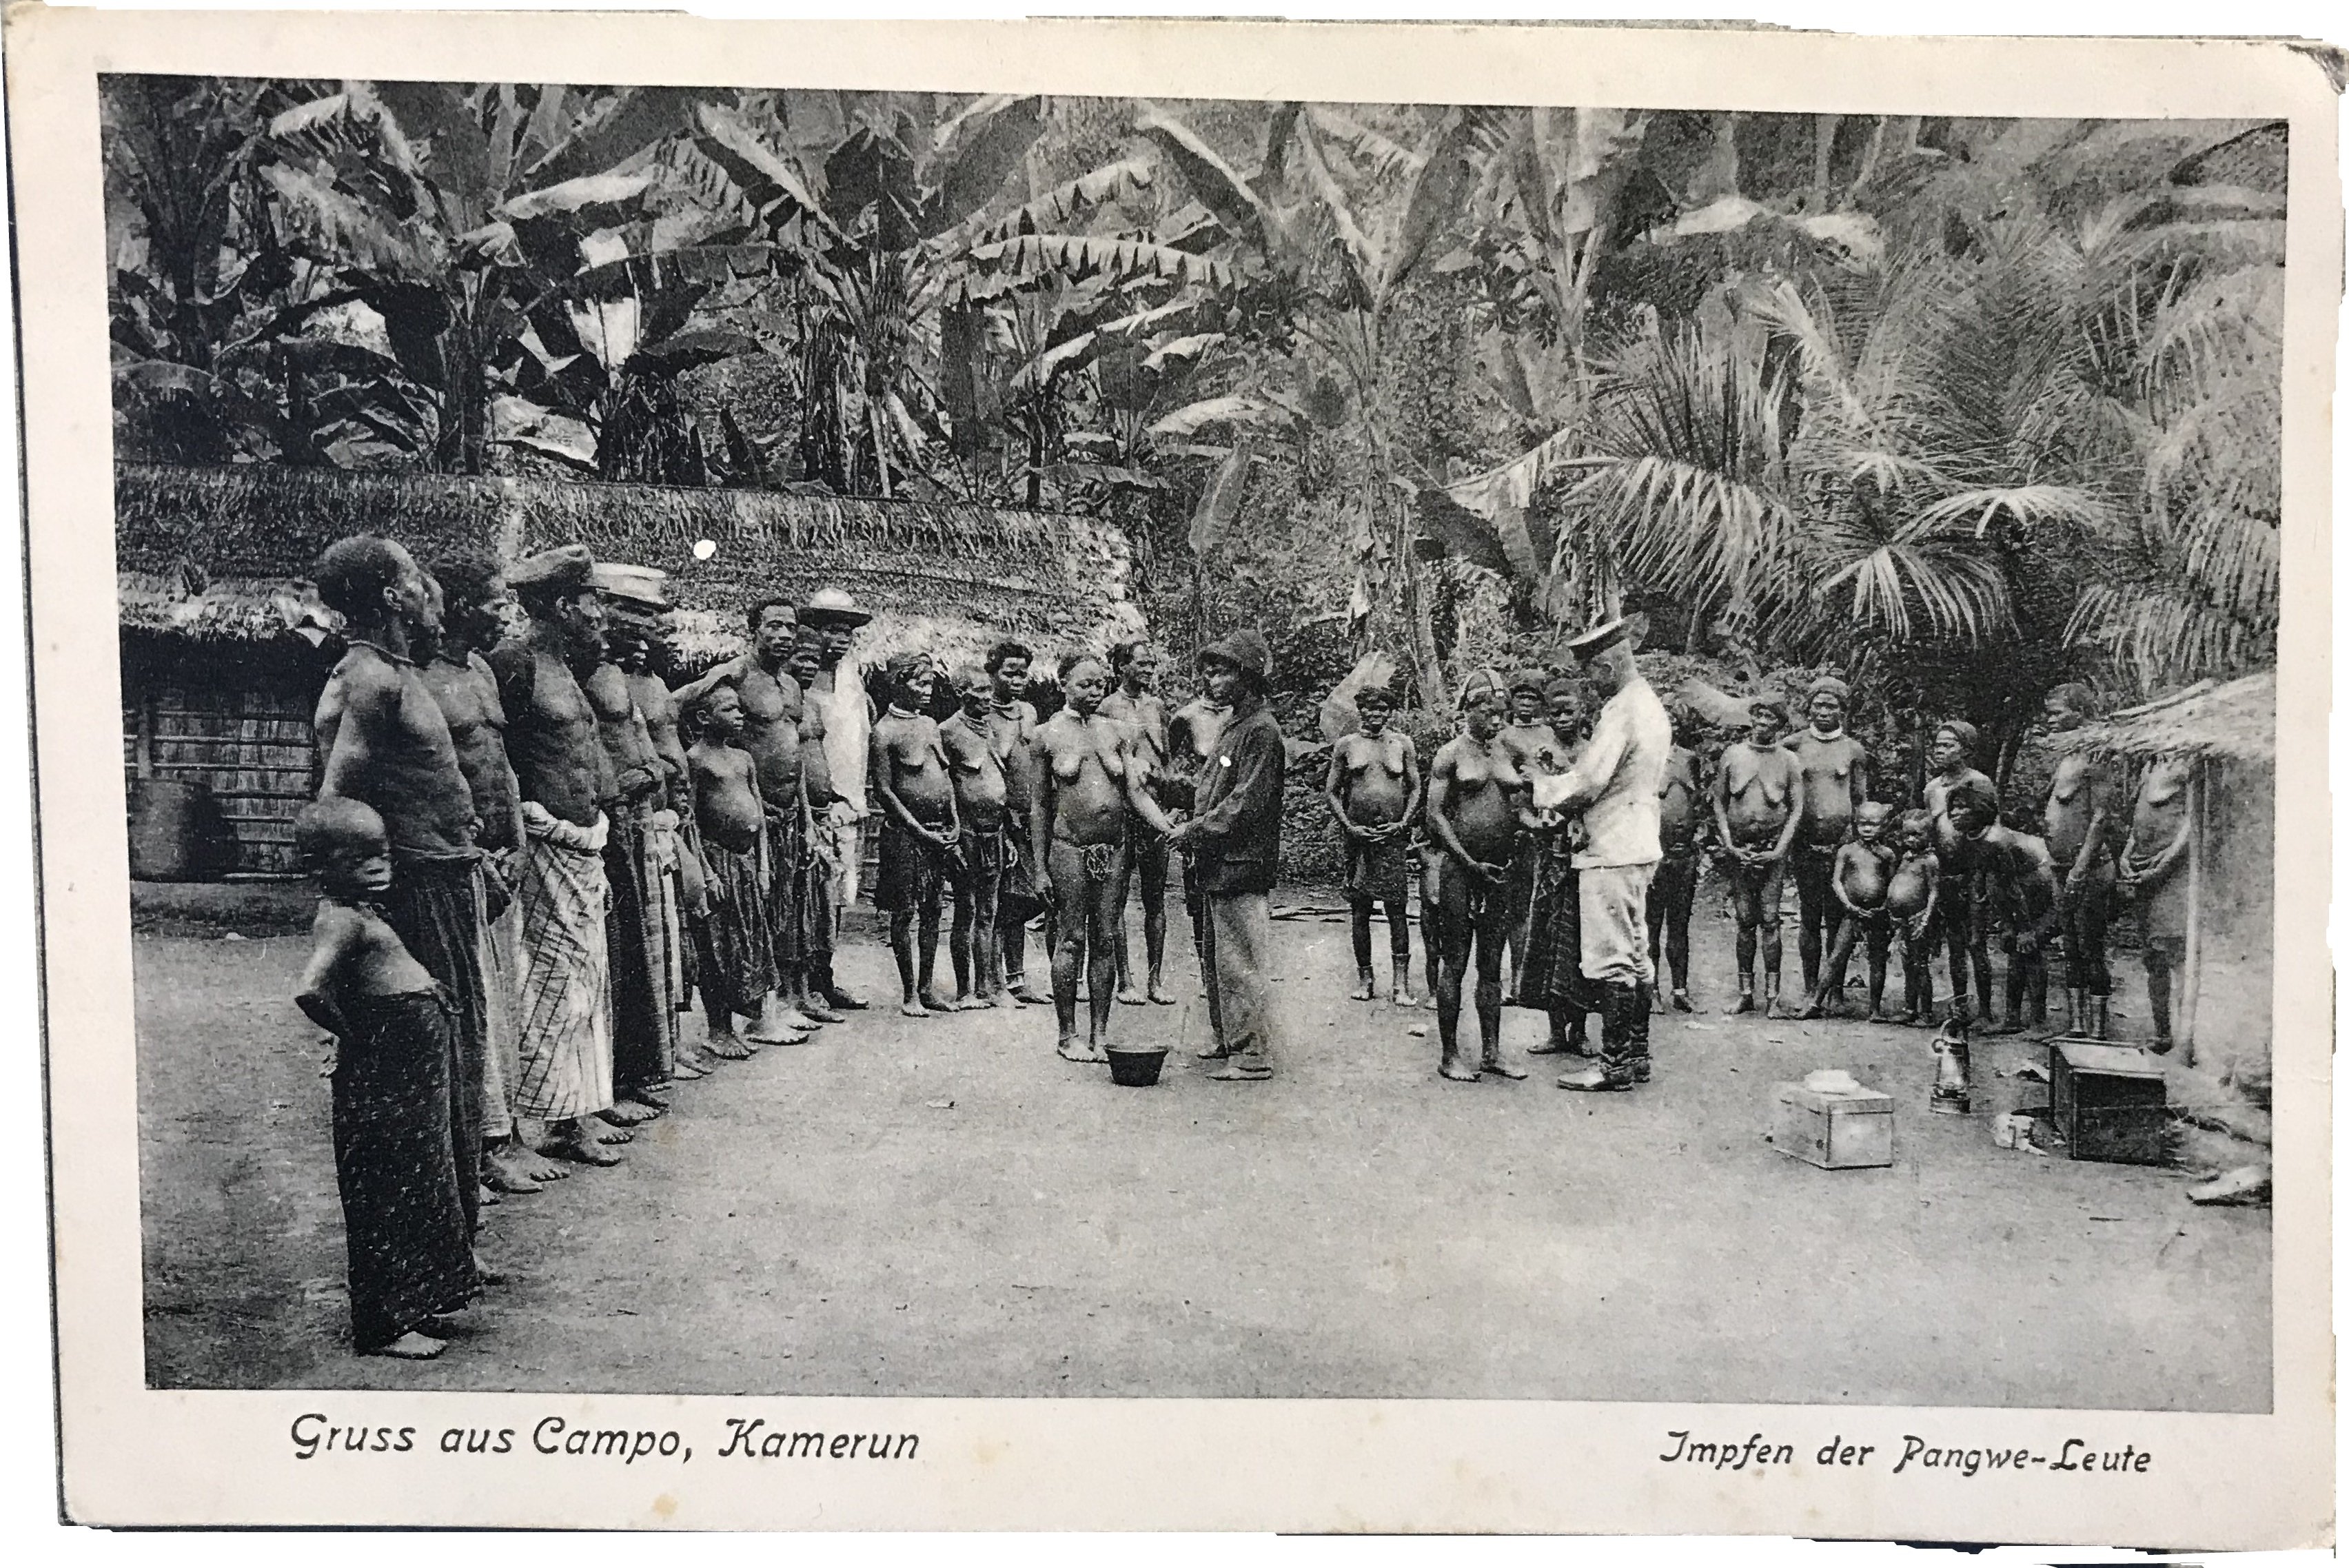 Gruß aus Campo, Kamerun, Impfen der Pangwe-Leute, Postkarte, vor 1914, Museum für Stadt- und Kulturgeschichte, Menden